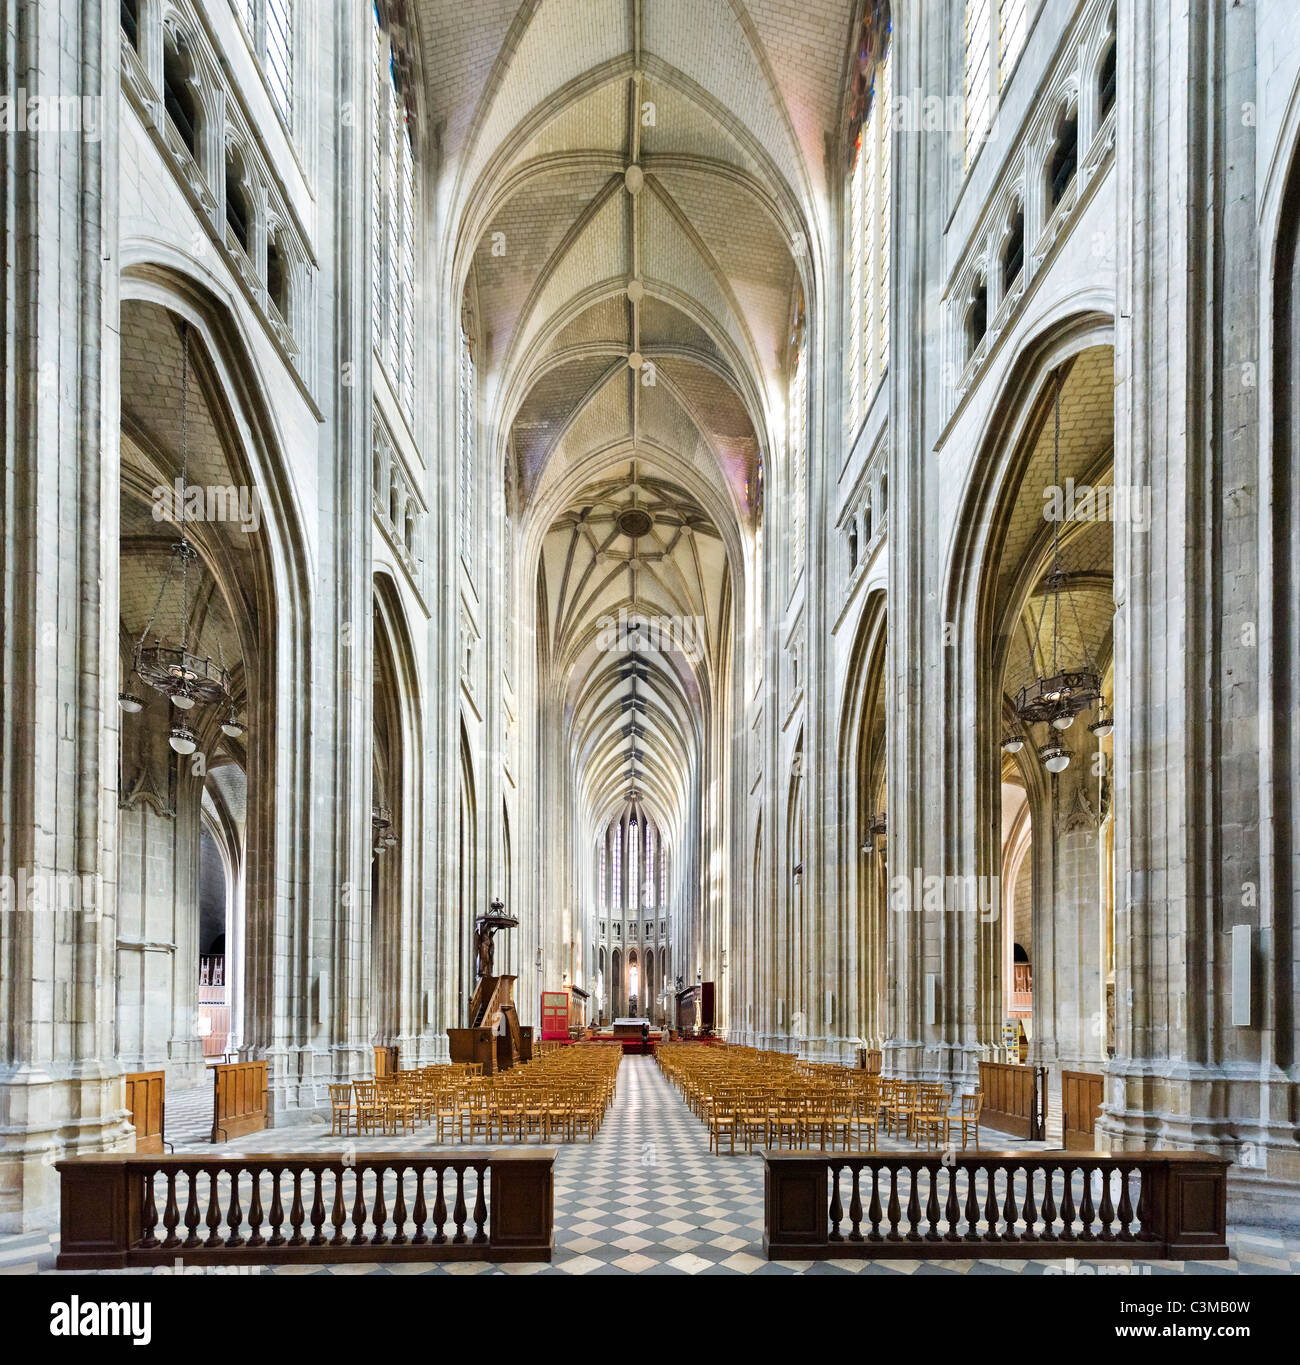 L'intérieur de la cathédrale d'Orléans (Cathédrale Sainte Croix d'Orléans), Orléans, France Banque D'Images